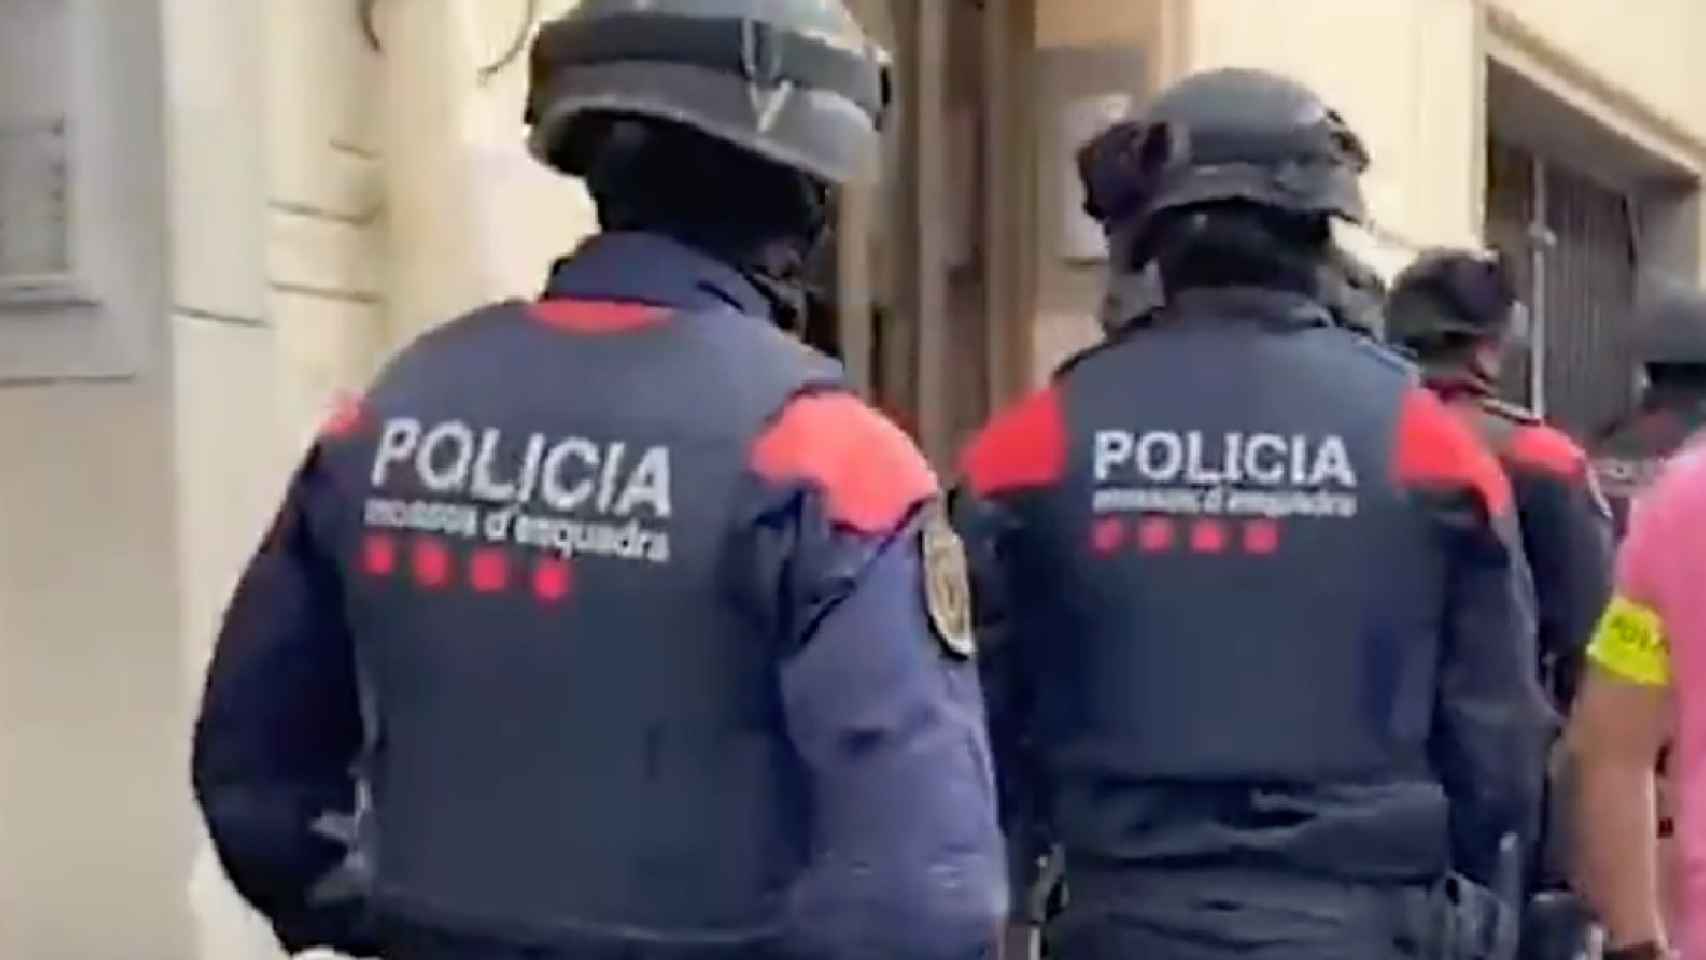 Los Mossos d'Esquadra detienen a los autores de una decena robos en entidades bancarias de Barcelona / MOSSOS